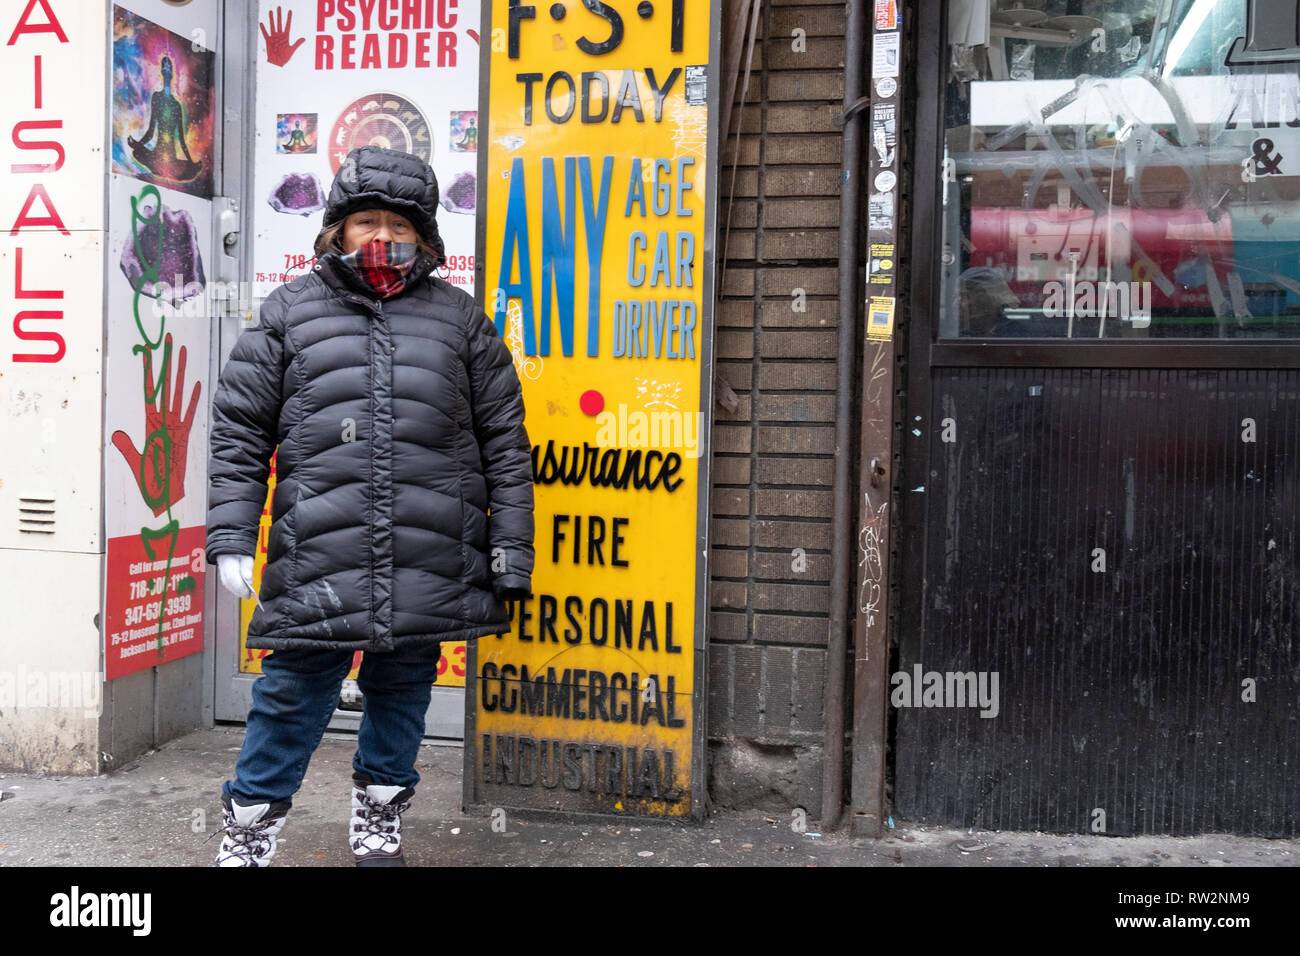 Eine Frau in einem schweren Mantel Hände Flugblätter vor einer psychischen Leser an einem kalten Wintertag. Auf Roosevelt Ave. in Jackson Heights, NEW YORK CITY. Stockfoto